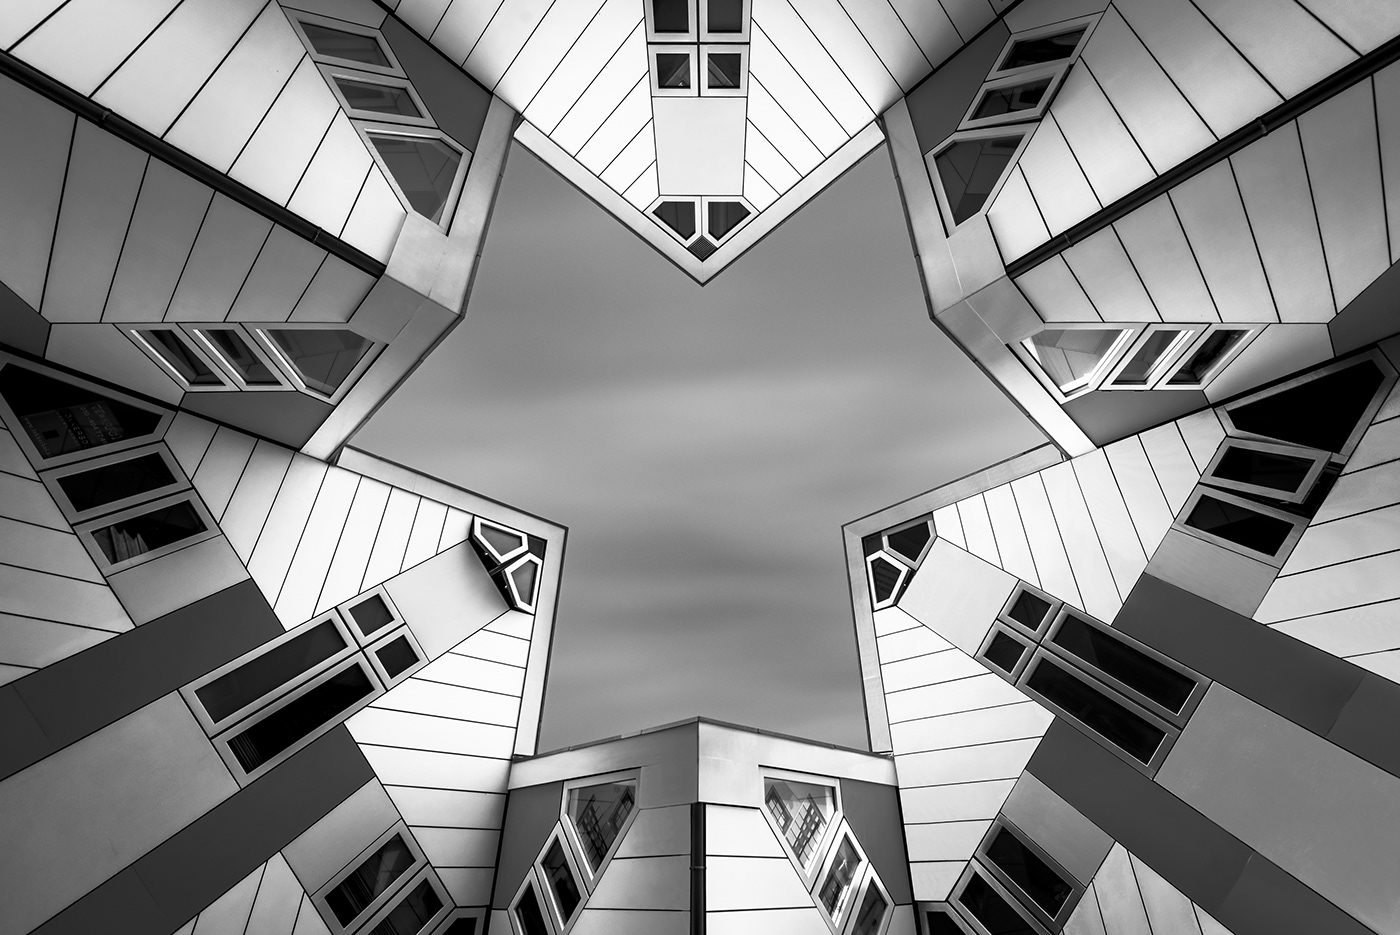 architecture monochrome black and white